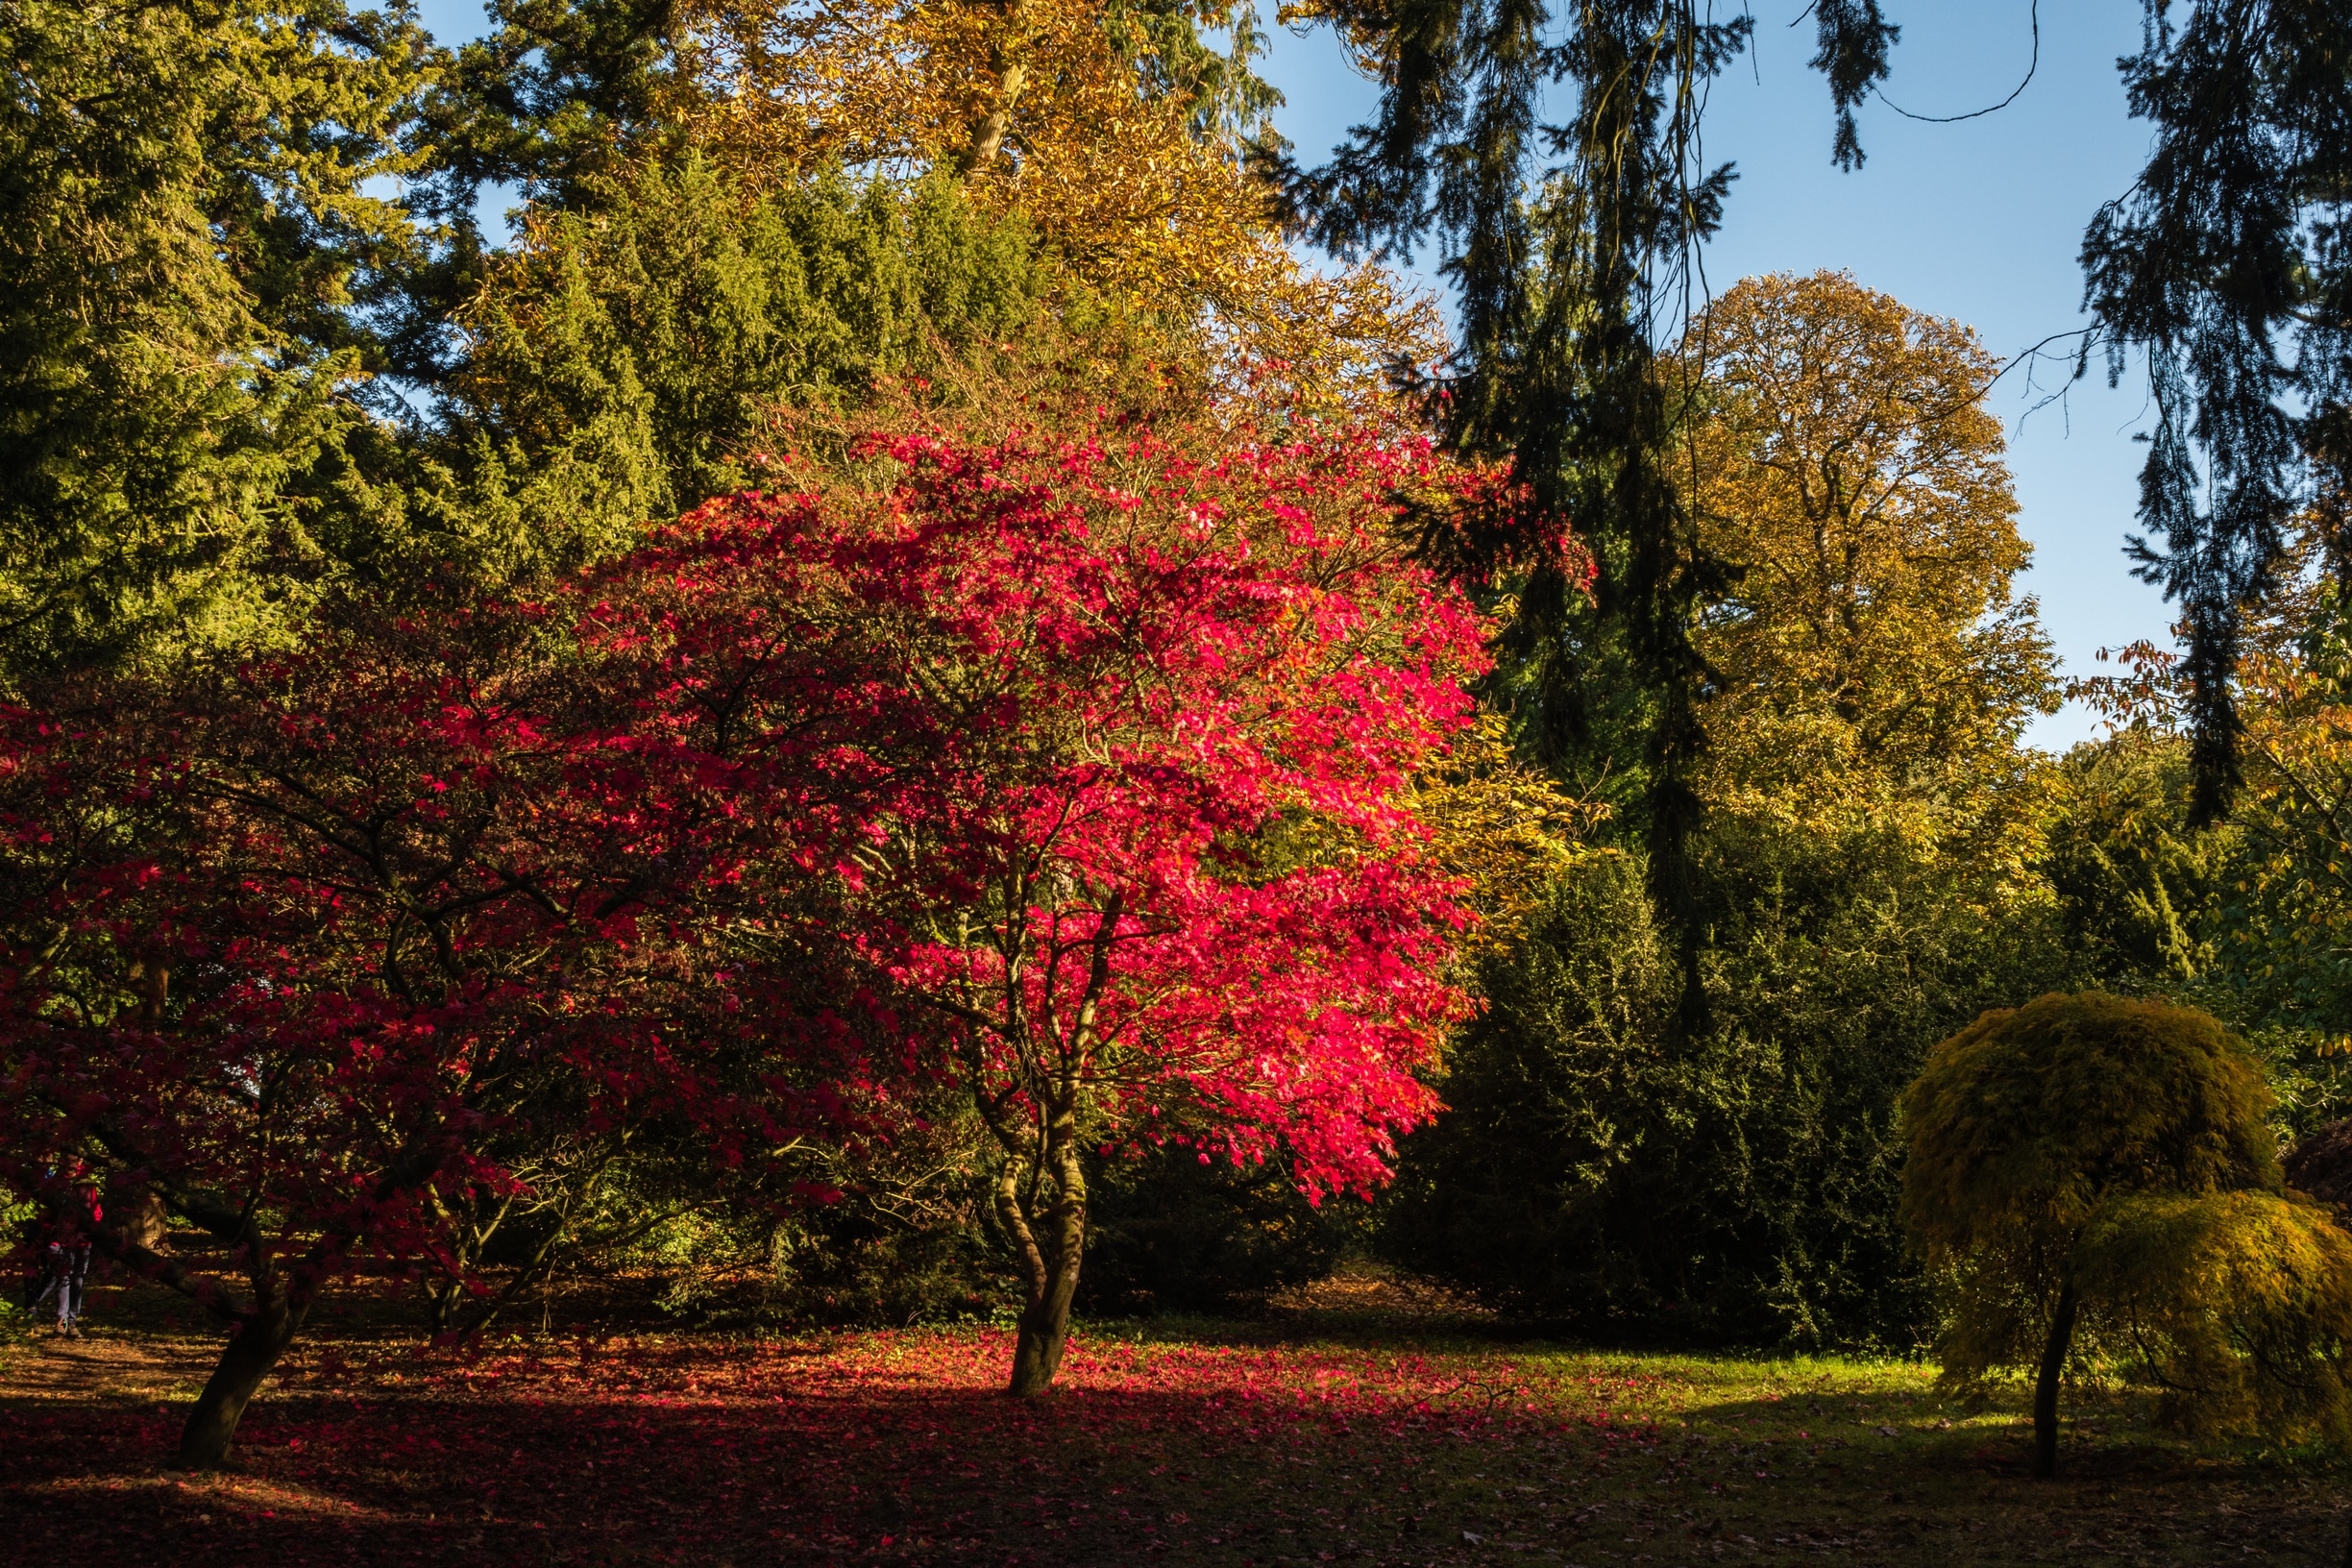 Westonbirt Arboretum, Tetbury, England, United Kingdom